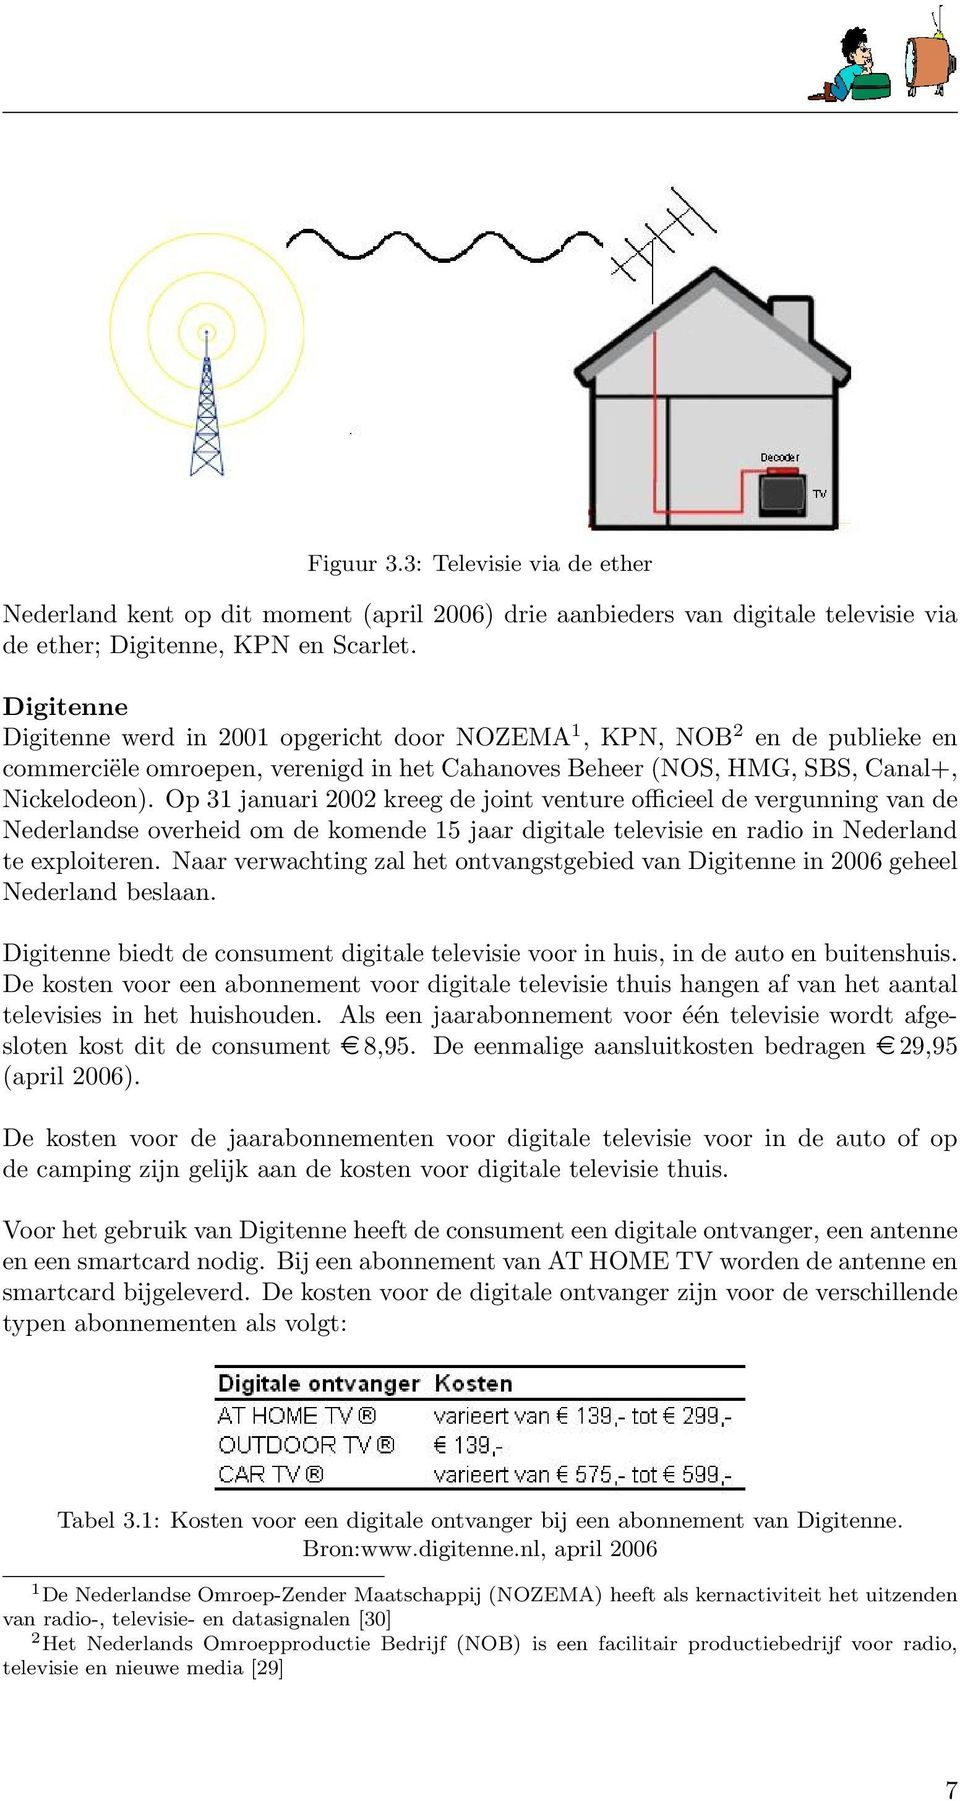 Op 31 januari 2002 kreeg de joint venture officieel de vergunning van de Nederlandse overheid om de komende 15 jaar digitale televisie en radio in Nederland te exploiteren.